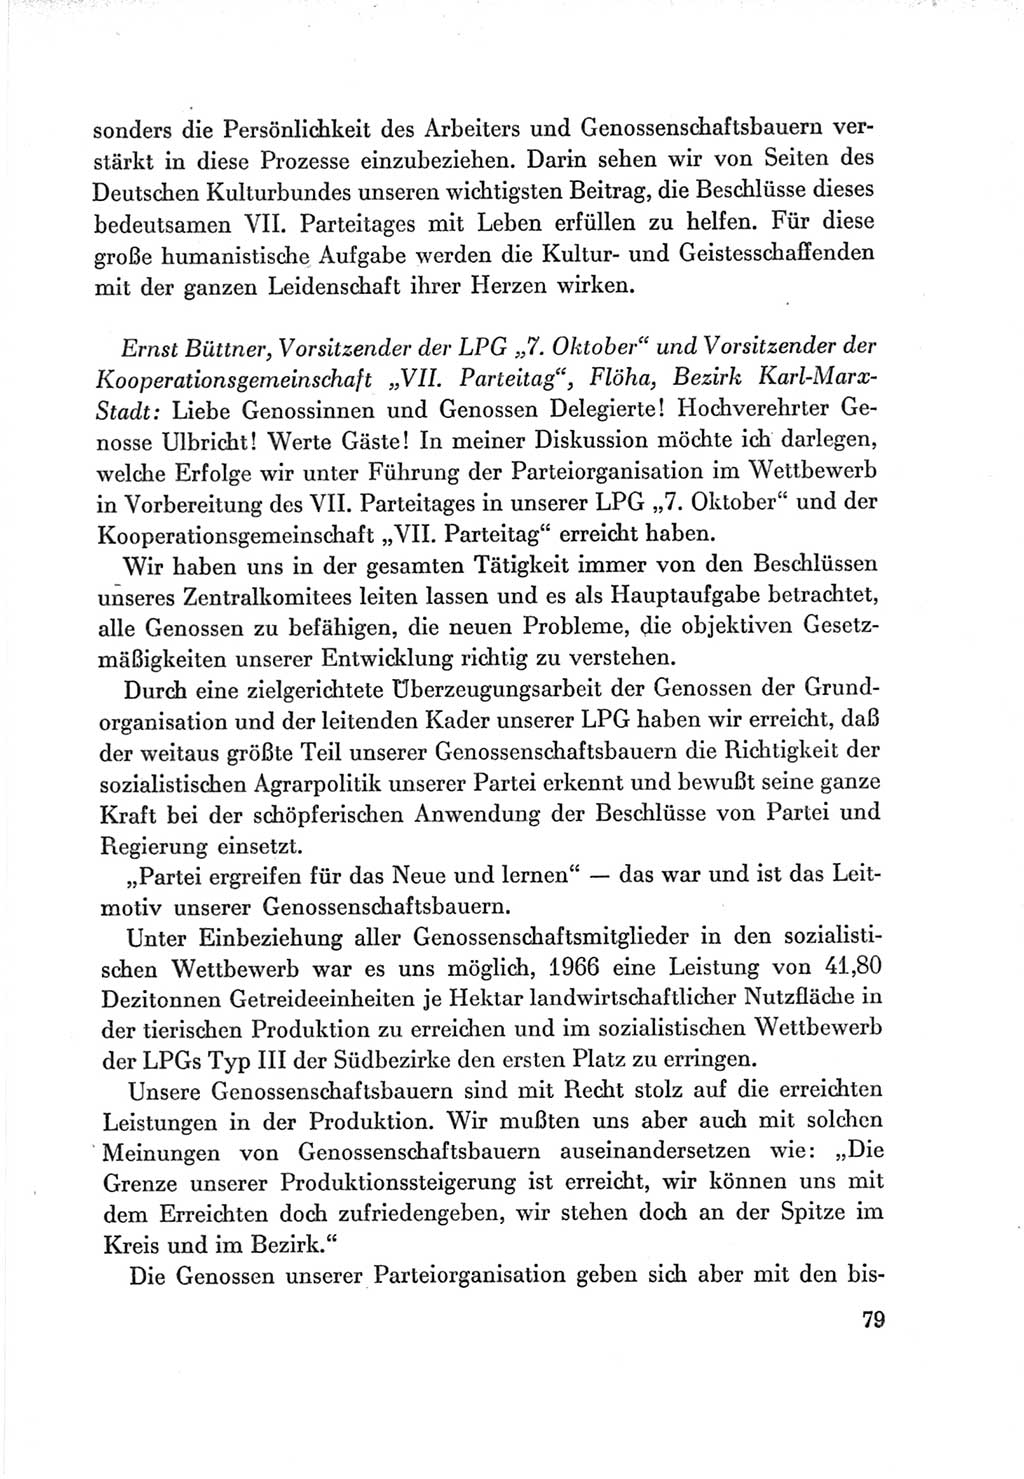 Protokoll der Verhandlungen des Ⅶ. Parteitages der Sozialistischen Einheitspartei Deutschlands (SED) [Deutsche Demokratische Republik (DDR)] 1967, Band Ⅲ, Seite 79 (Prot. Verh. Ⅶ. PT SED DDR 1967, Bd. Ⅲ, S. 79)